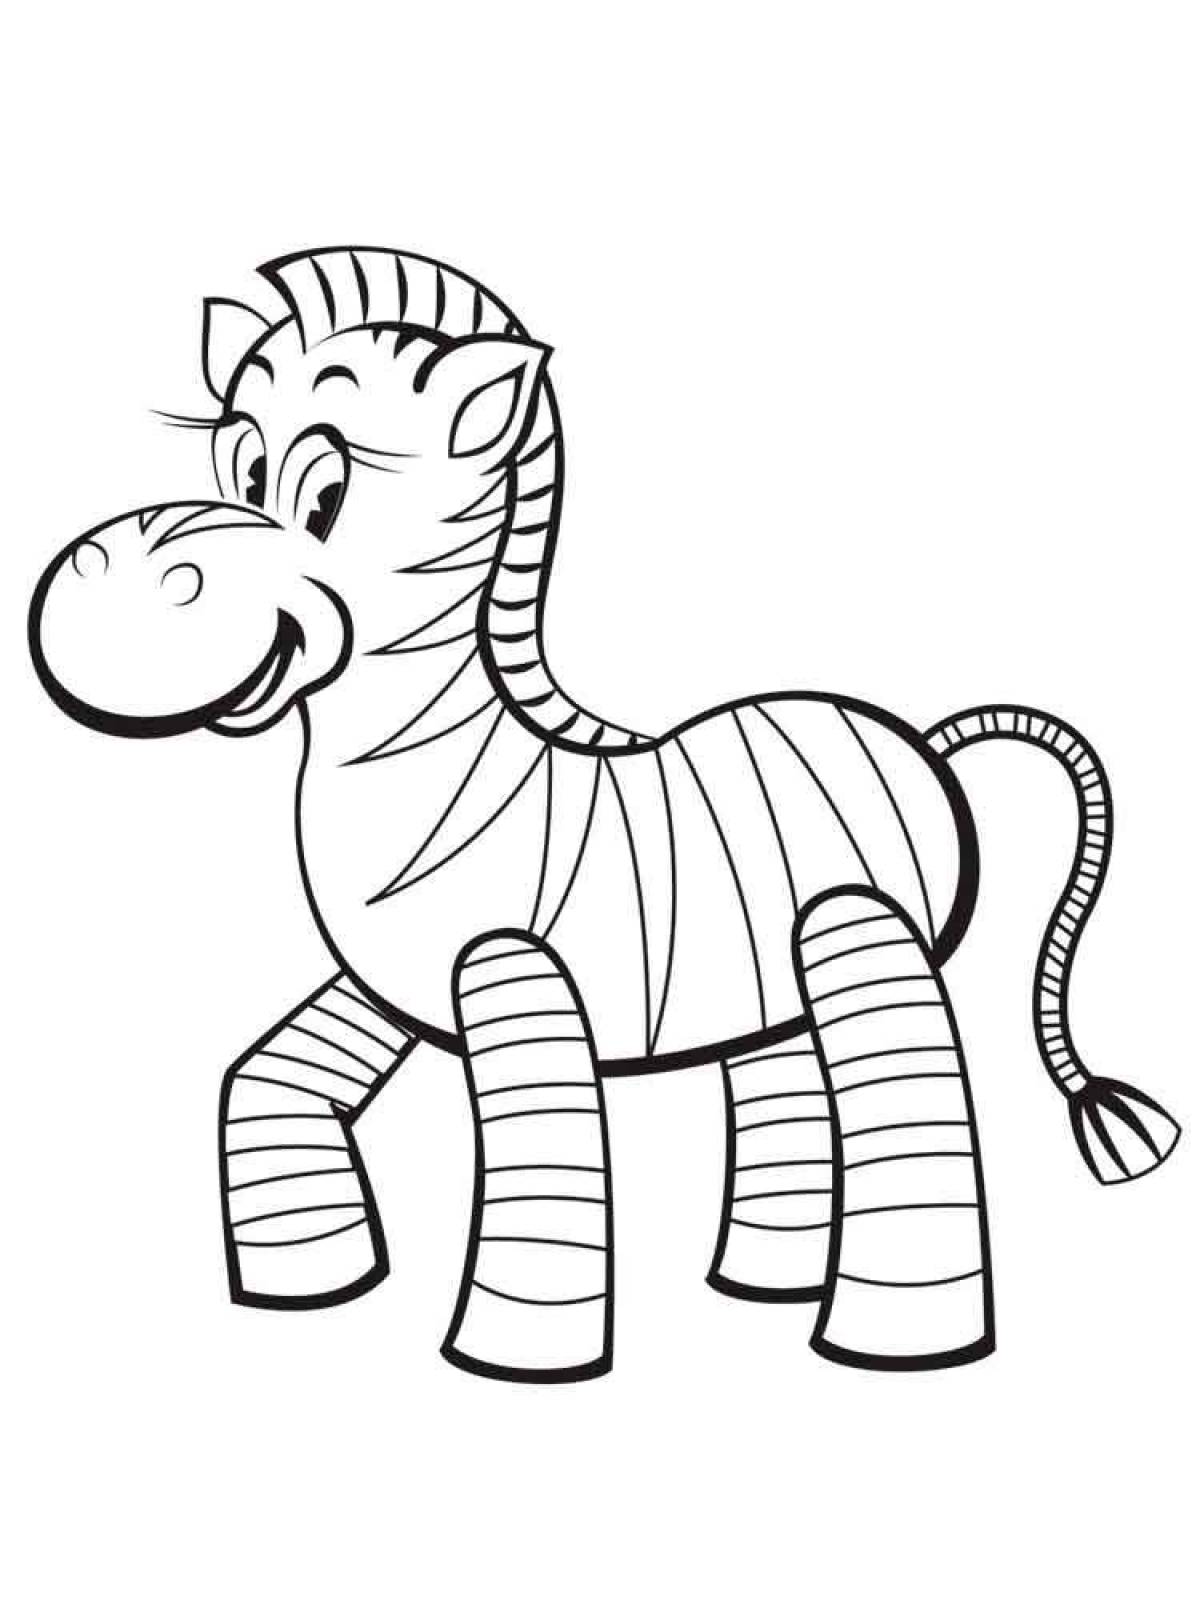 Цветная яркая страница раскраски зебры для детей